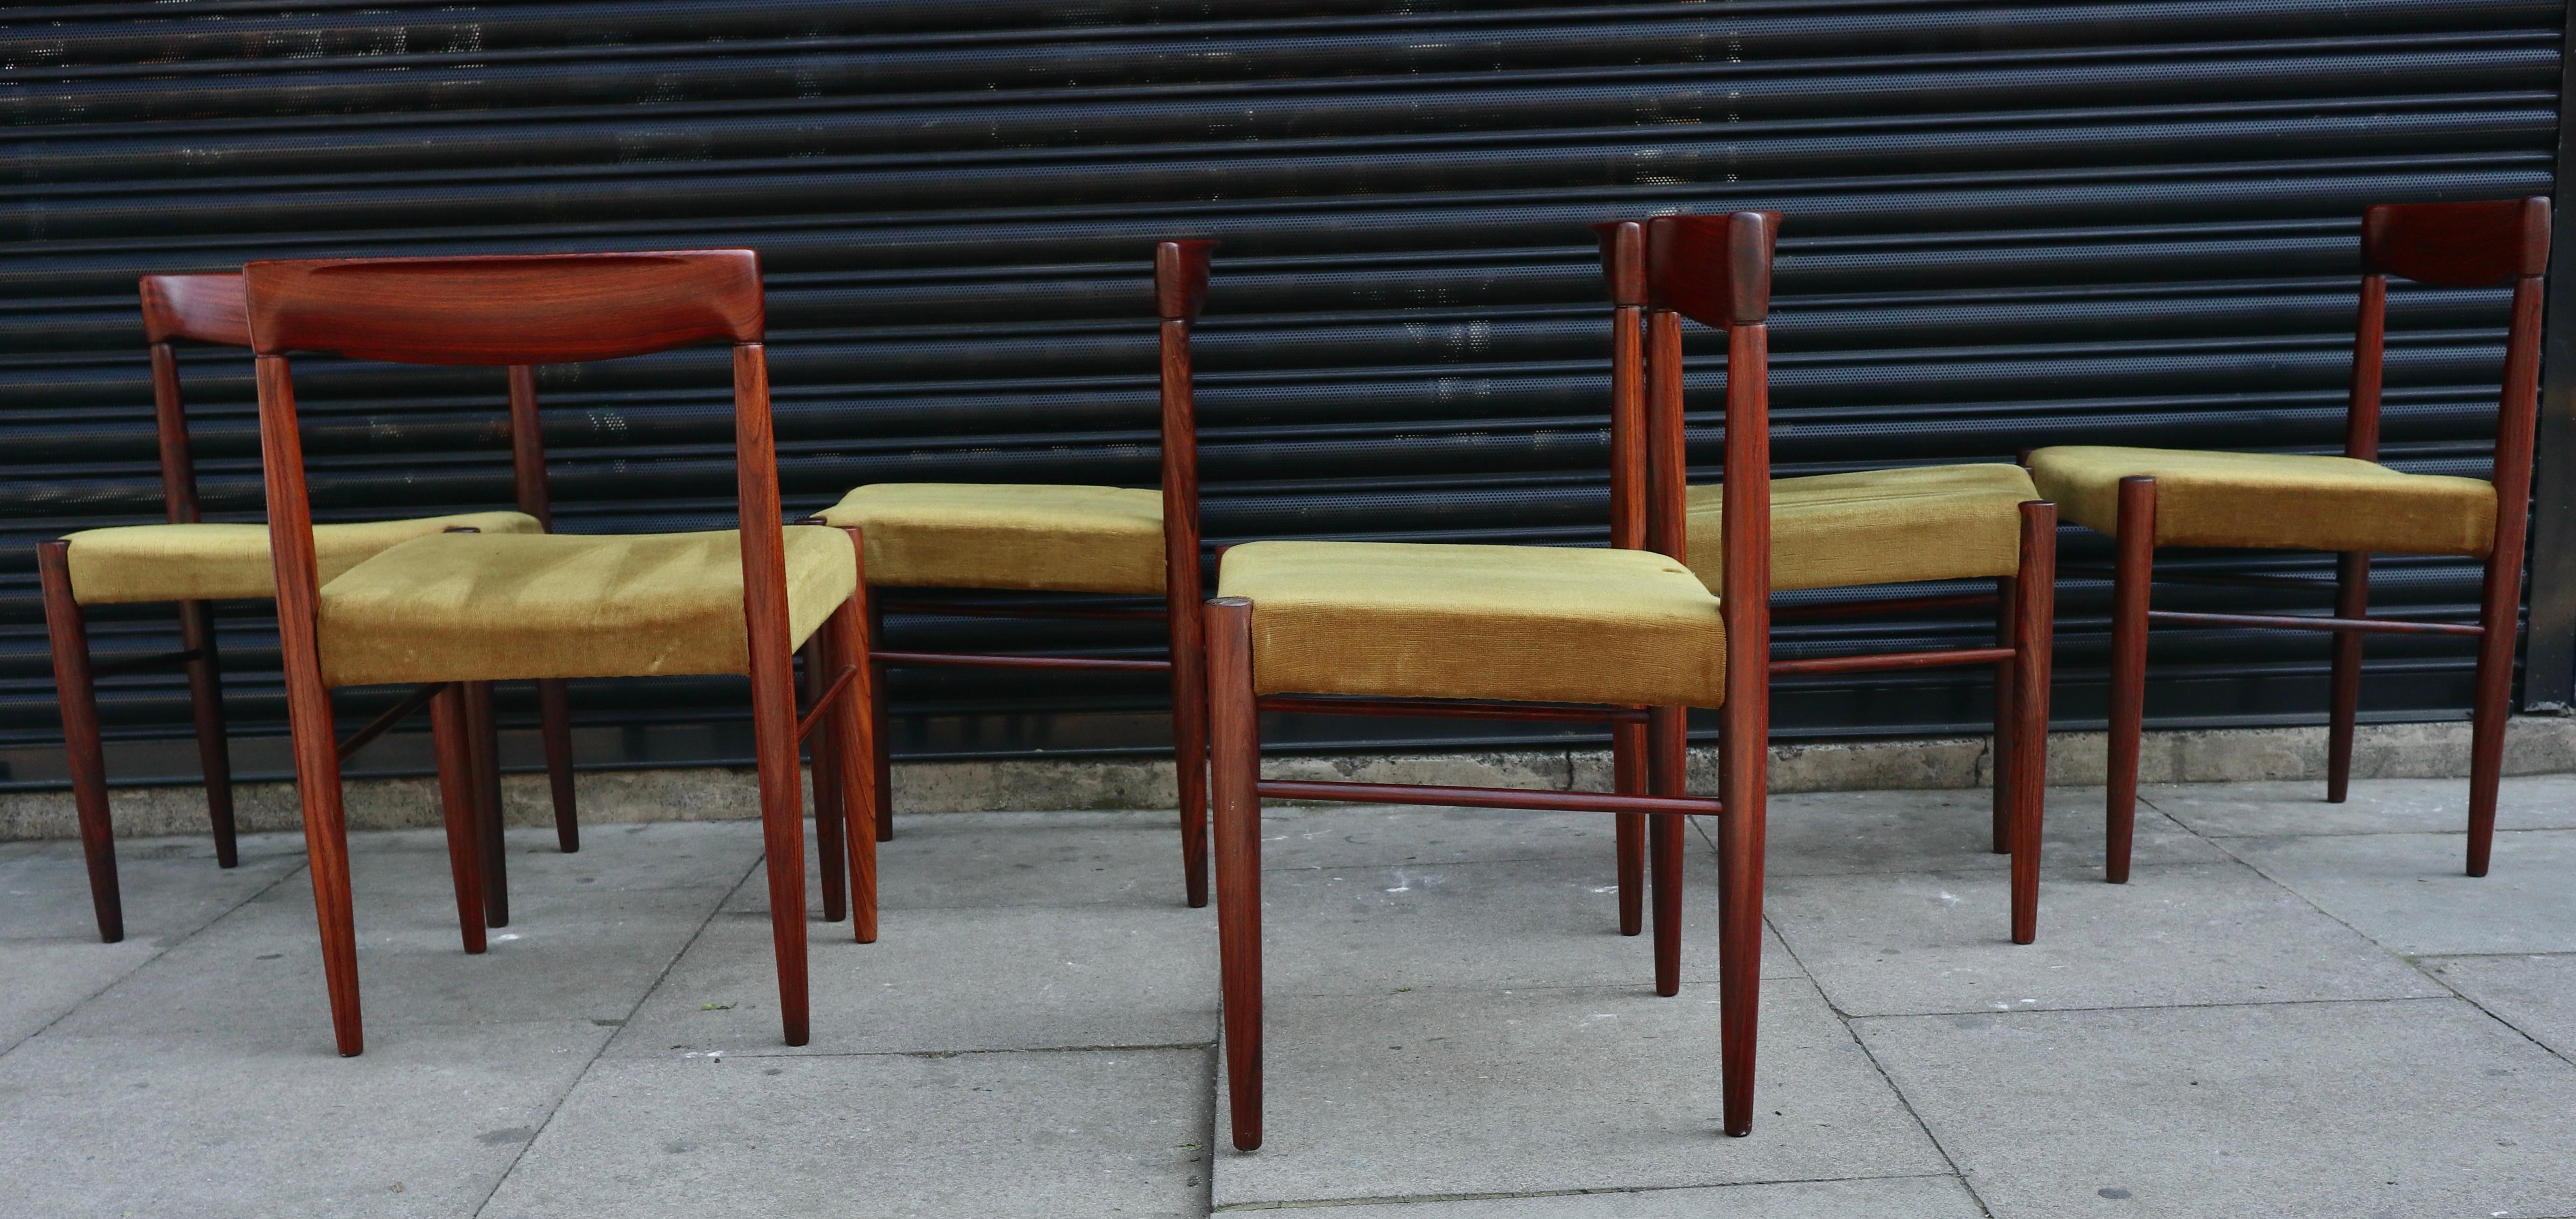 Magnifique et élégant ensemble de six chaises de salle à manger danoises en bois de rose massif des années 1960, recouvertes de leur textile de velours jaune d'origine.  Ces chaises conçues par H. W. Klein ont été produites par Byne. Elles sont en